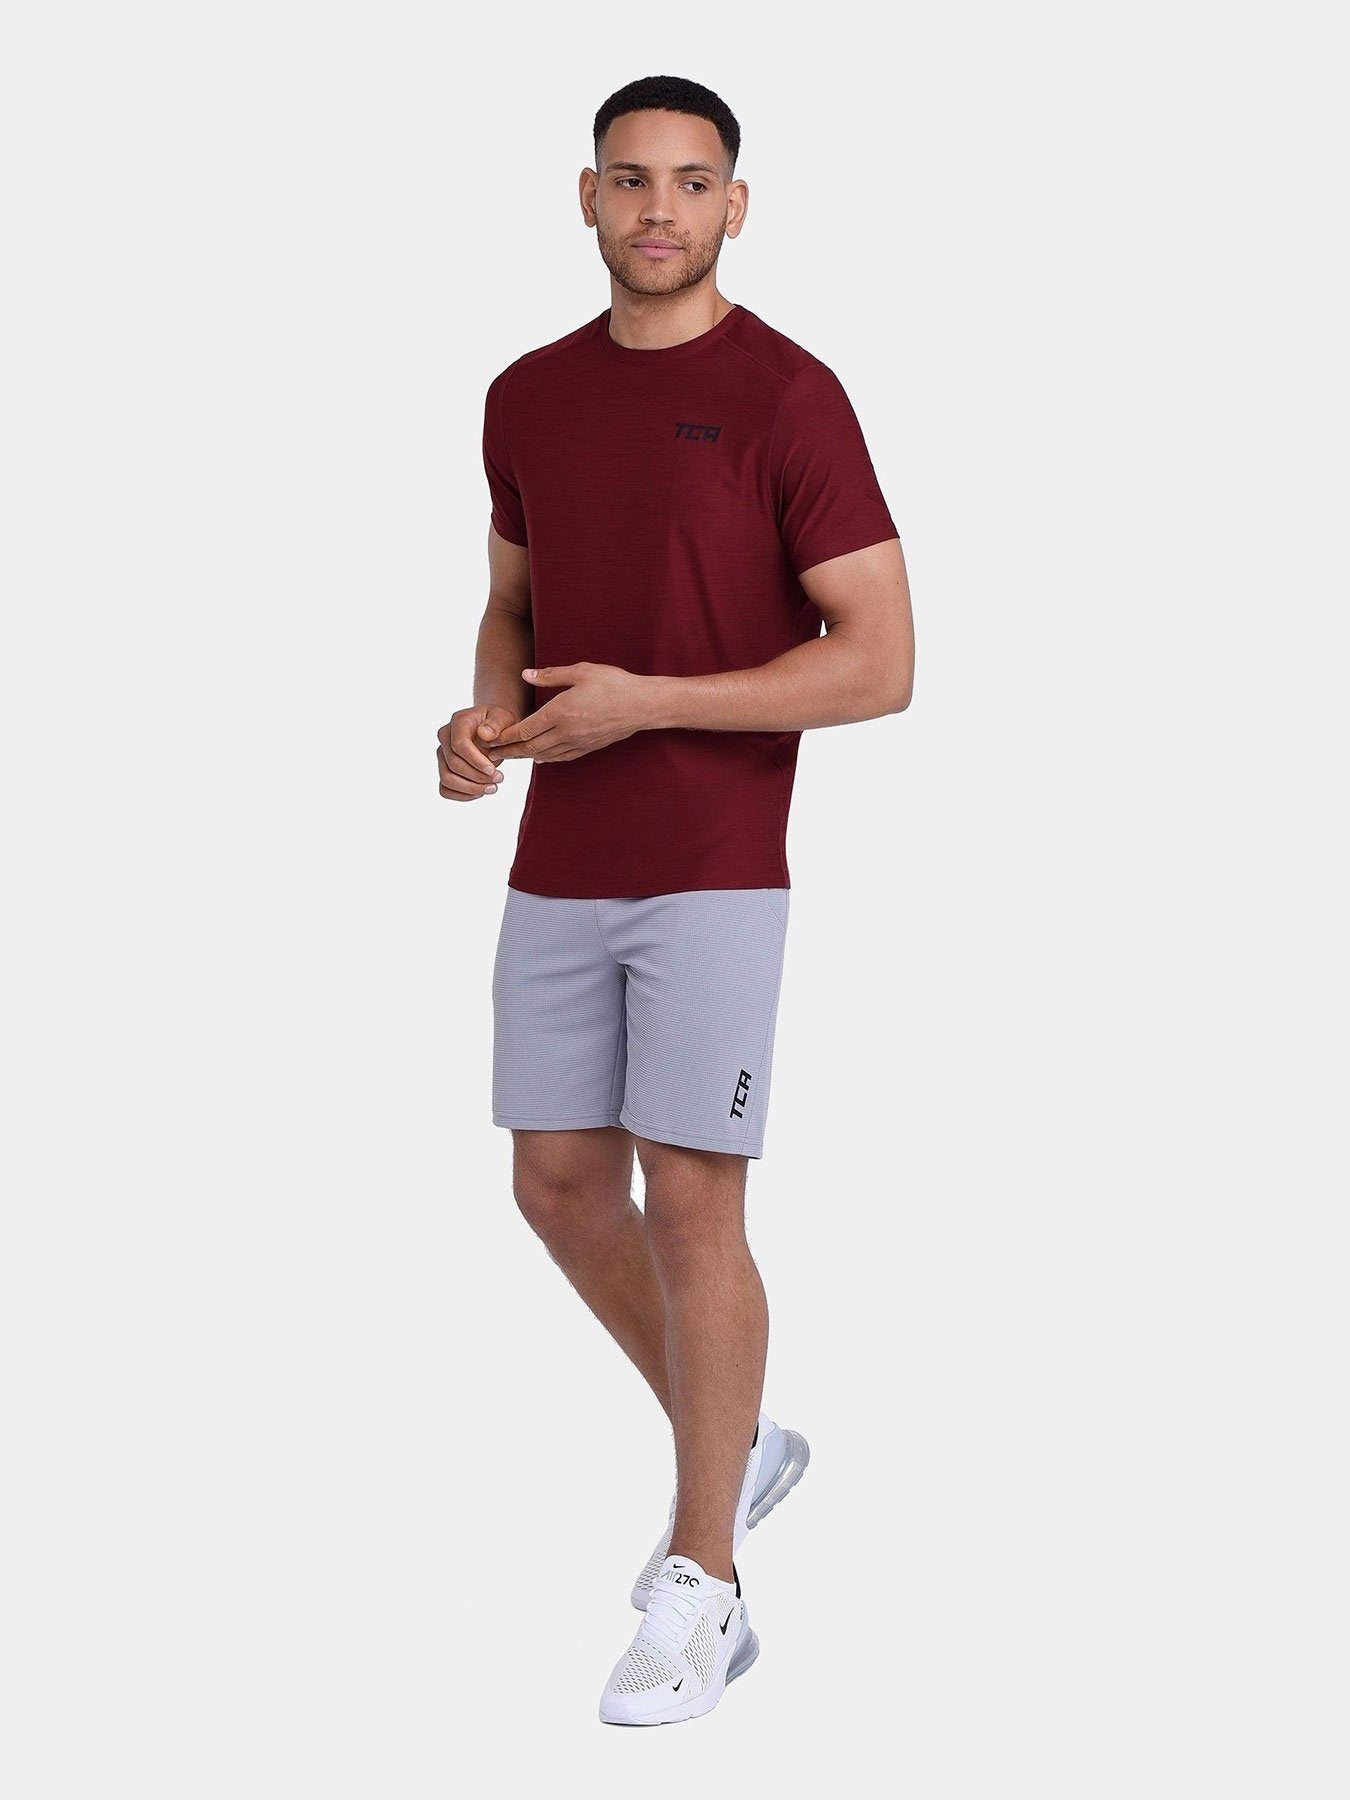 Galaxy 2.0 Short Sleeve T-Shirt For Men